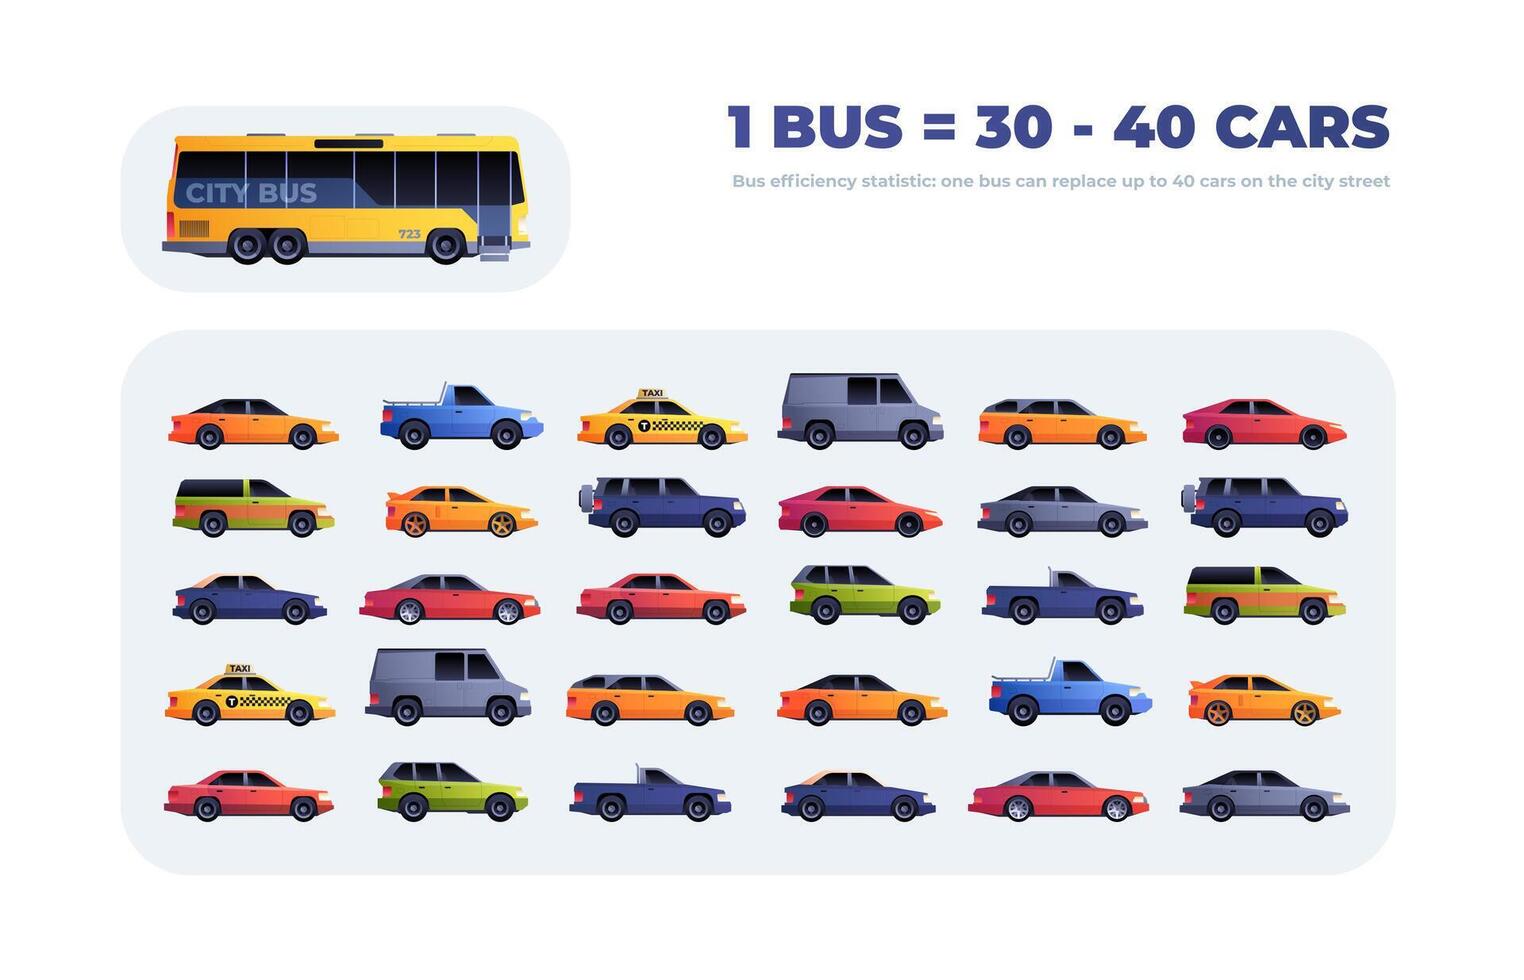 ônibus eficiência. comparação infográfico do ônibus versus carros cidade tráfego, carros substituído de 1 ônibus inteligente cidade estrada regulamento conceito. vetor ilustração